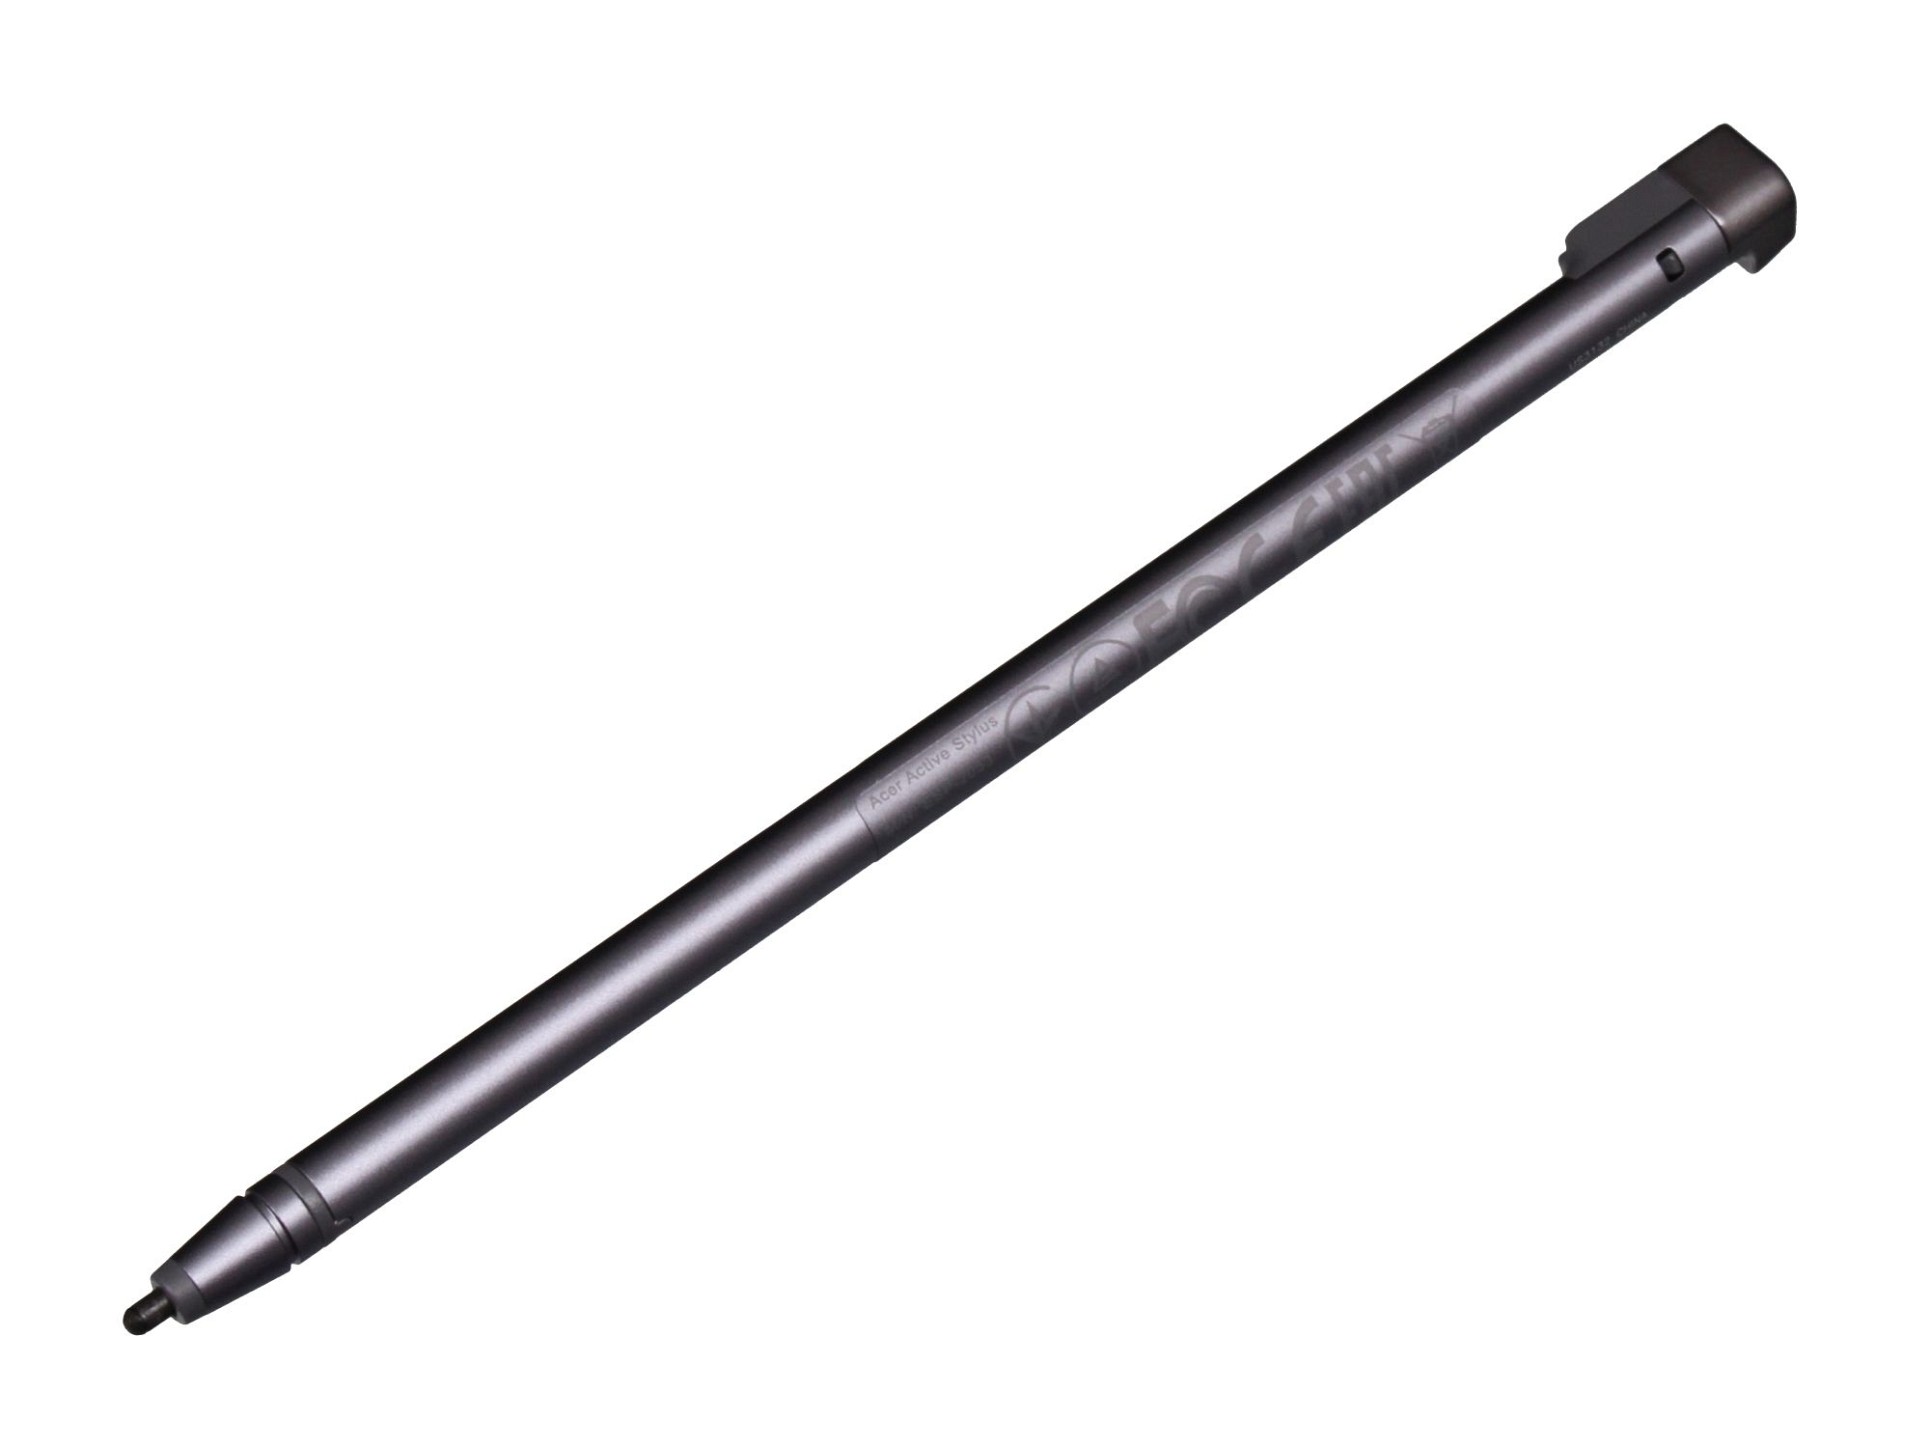 Acer S401 Stylus Pen